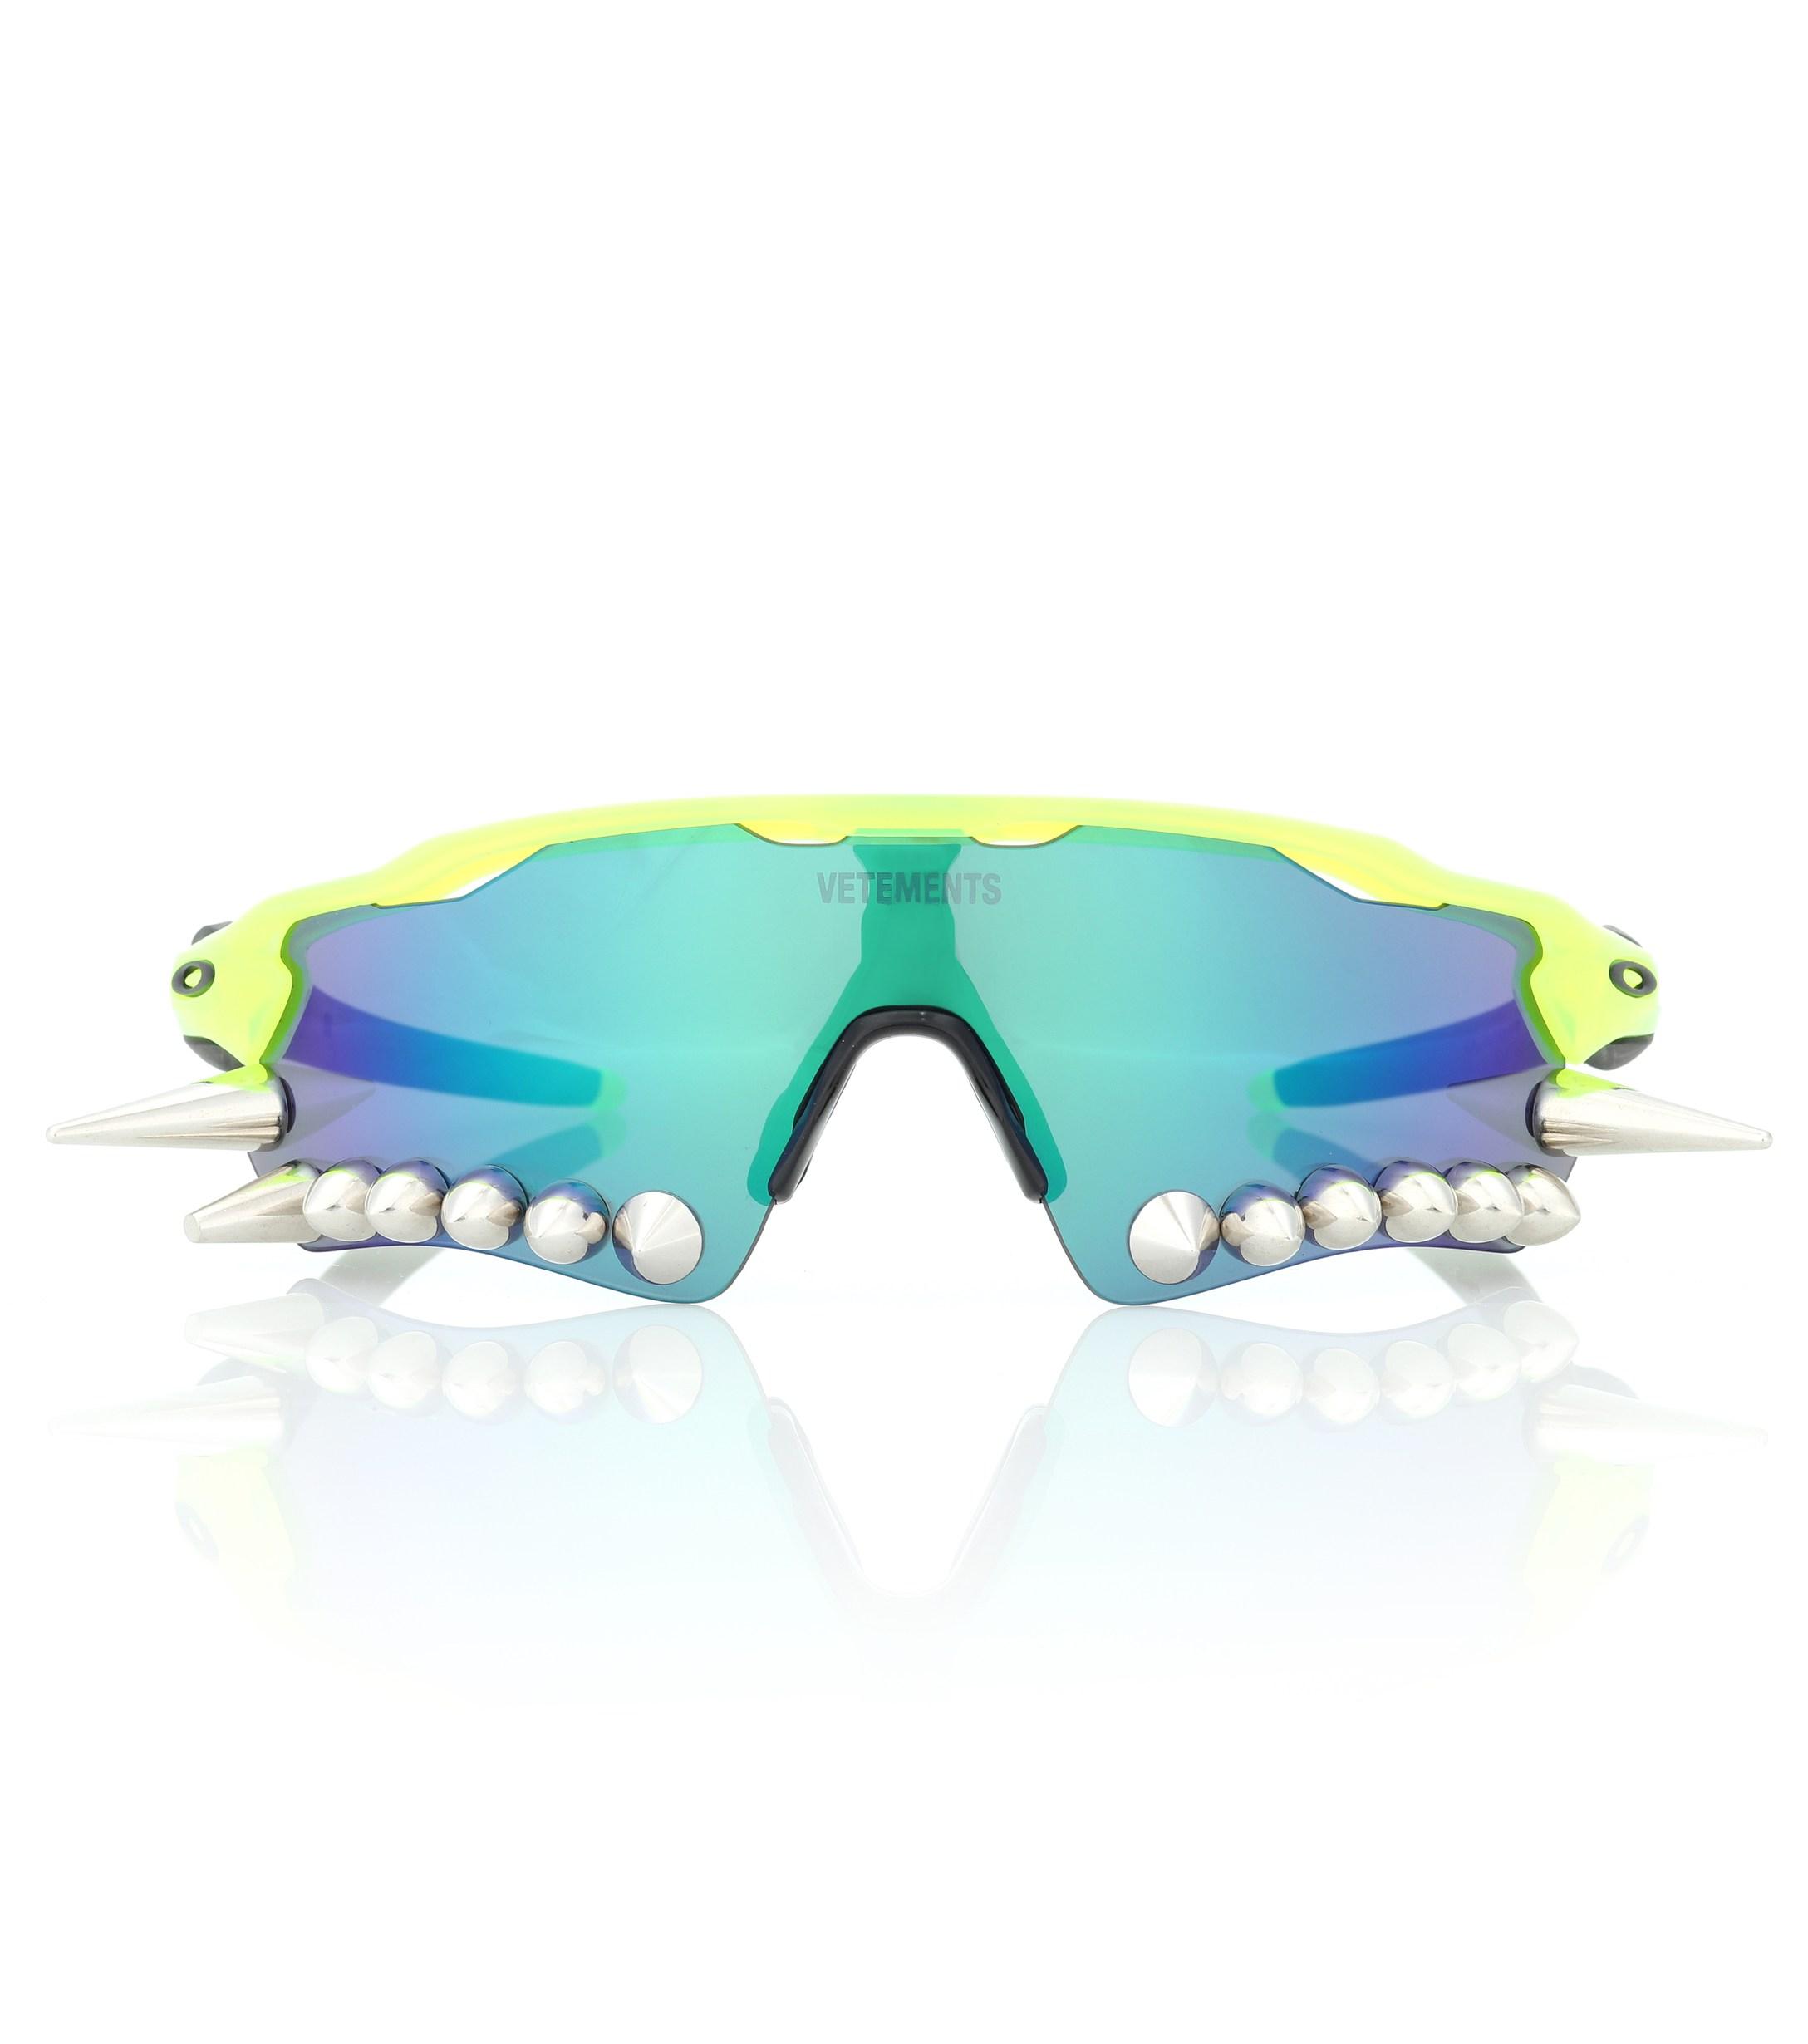 Vetements X Oakley Spikes Sunglasses in Green - Lyst